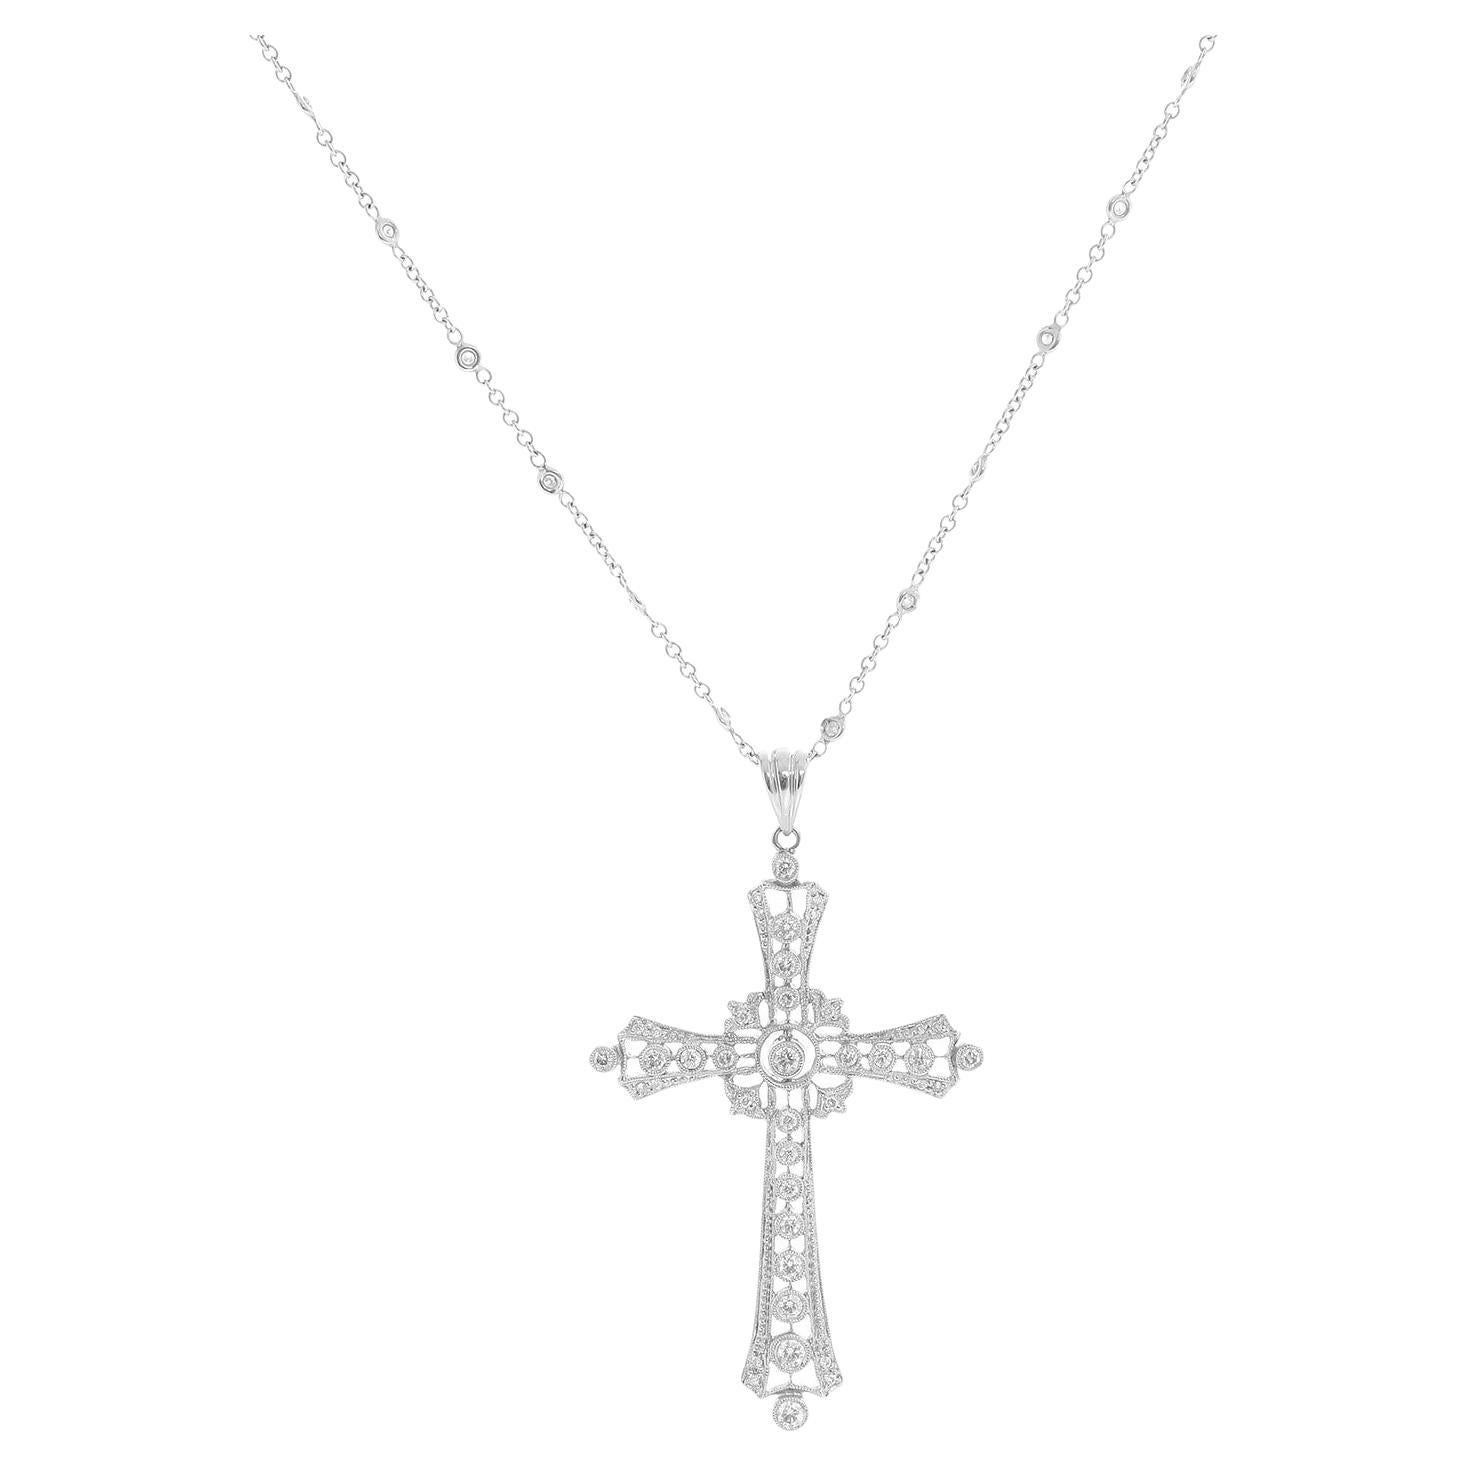 Sue Gragg, collier à chaîne en or blanc 18 carats avec croix byzantine et diamants